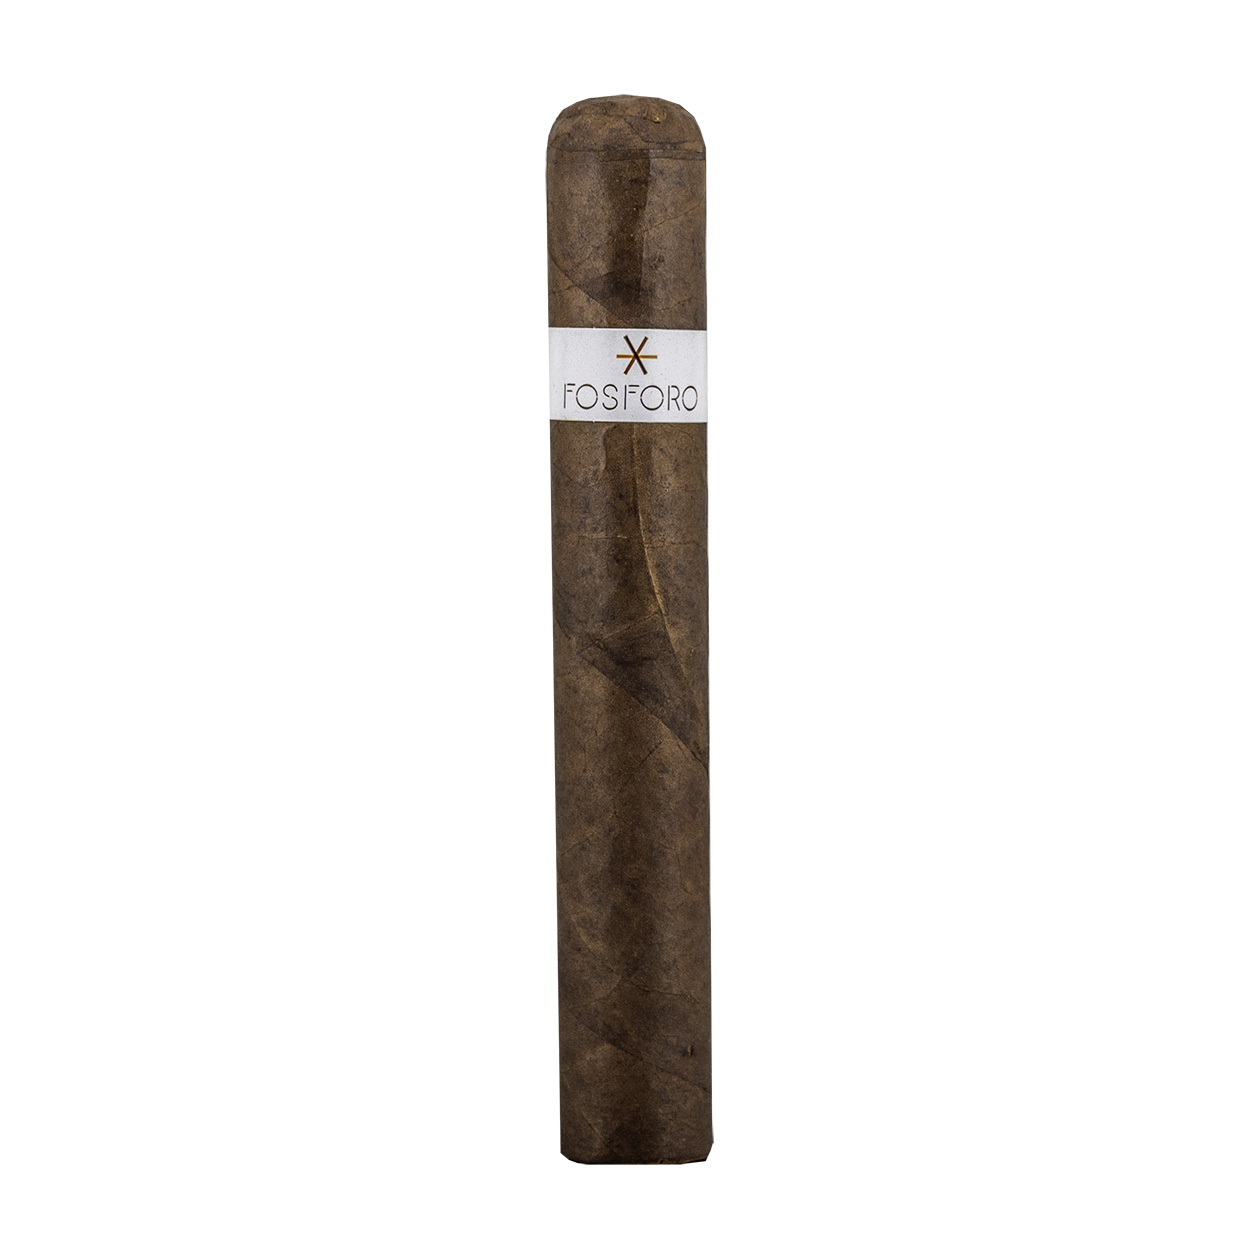 Fosforo Gordo Cigar - Single